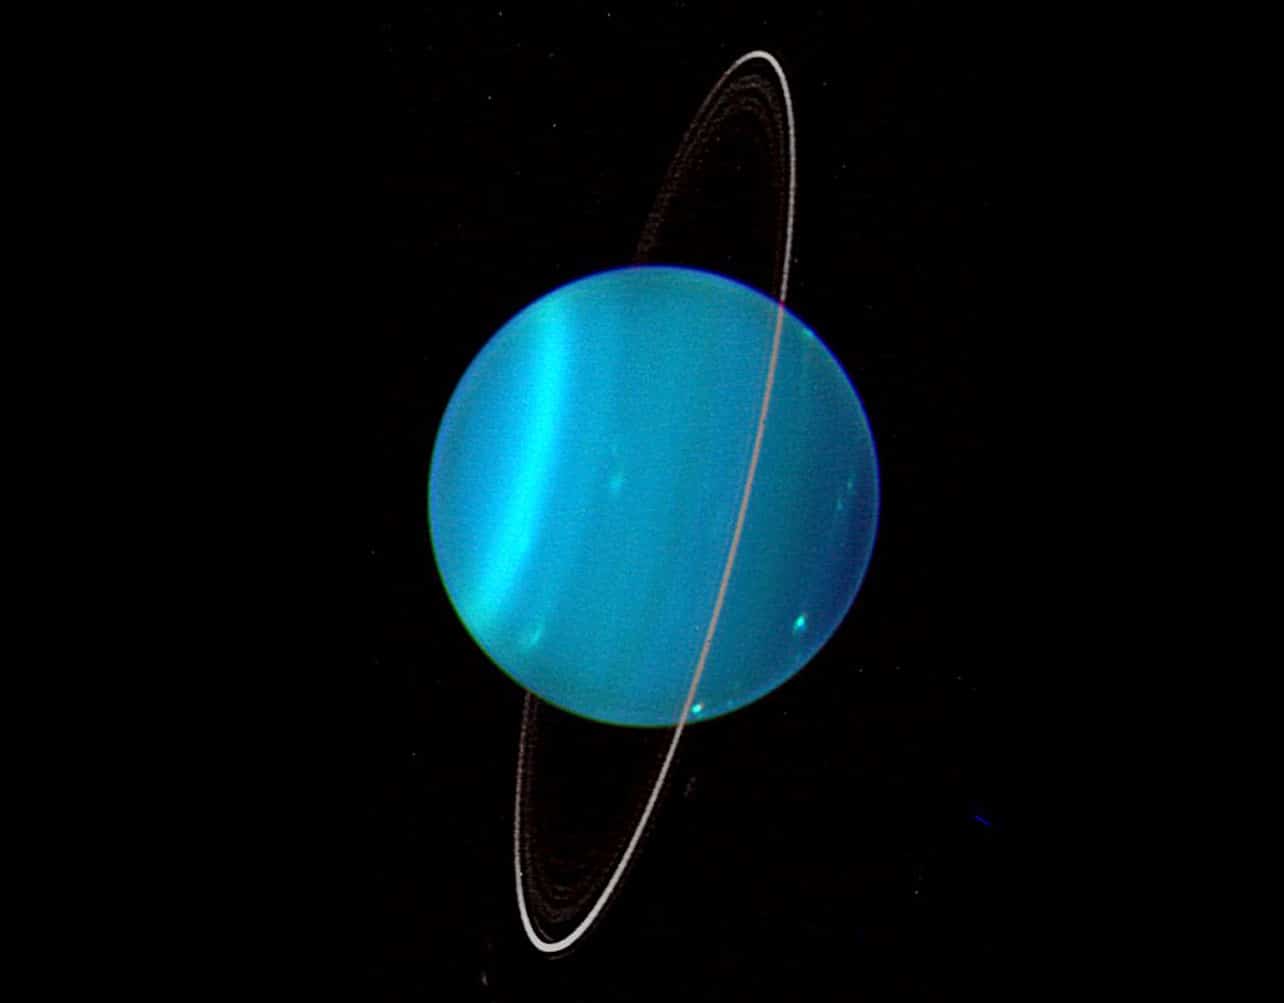 Japanese astronomers explain the origins of Uranus' weirdness - Tech ...